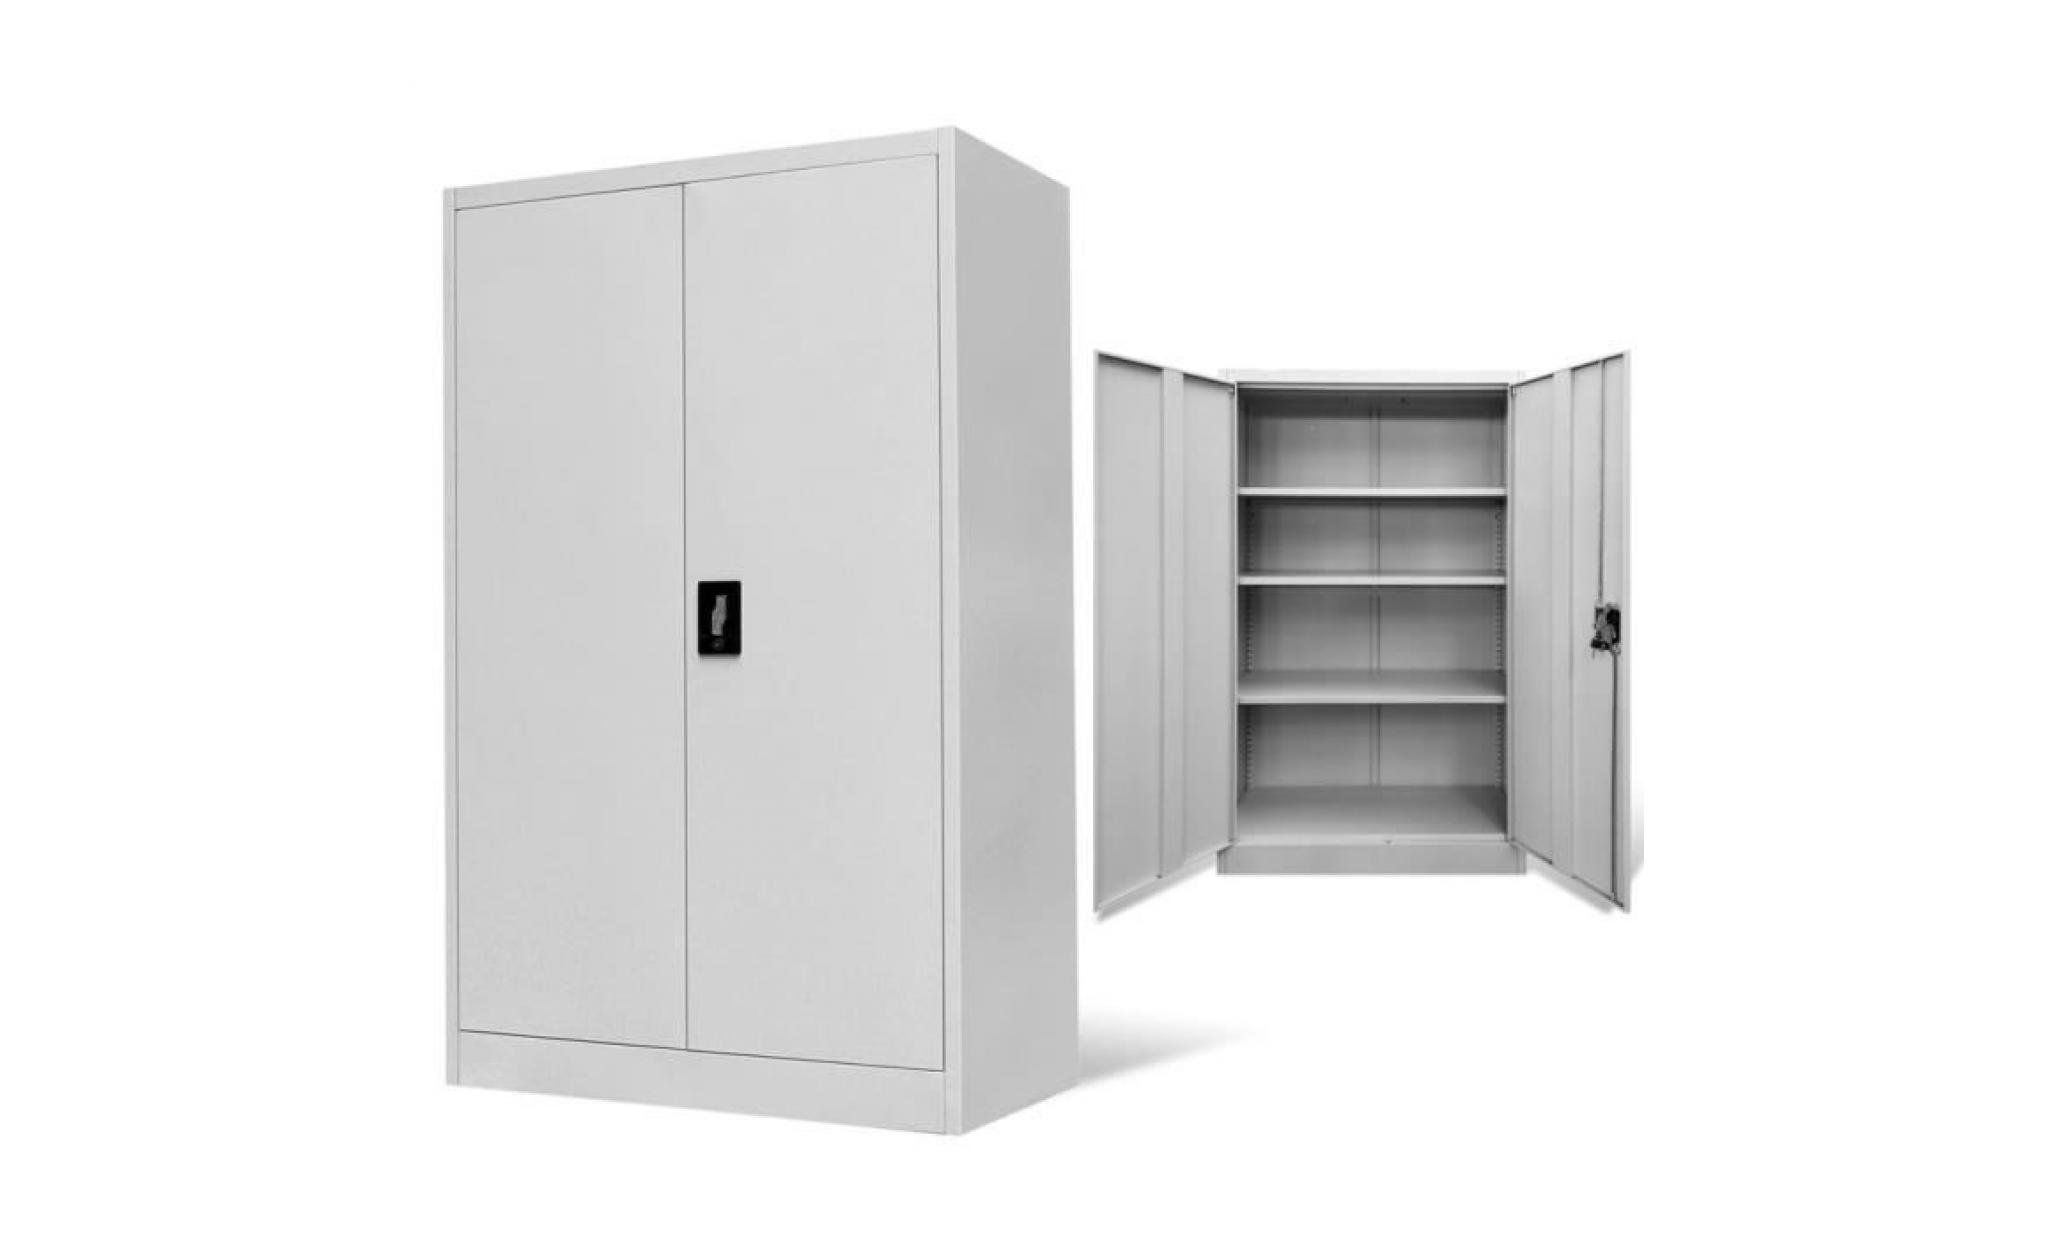 armoire de bureau, au design simple mais élégant, sera un excellent choix pour le tri et le stockage de vos fichiers et autres pas cher